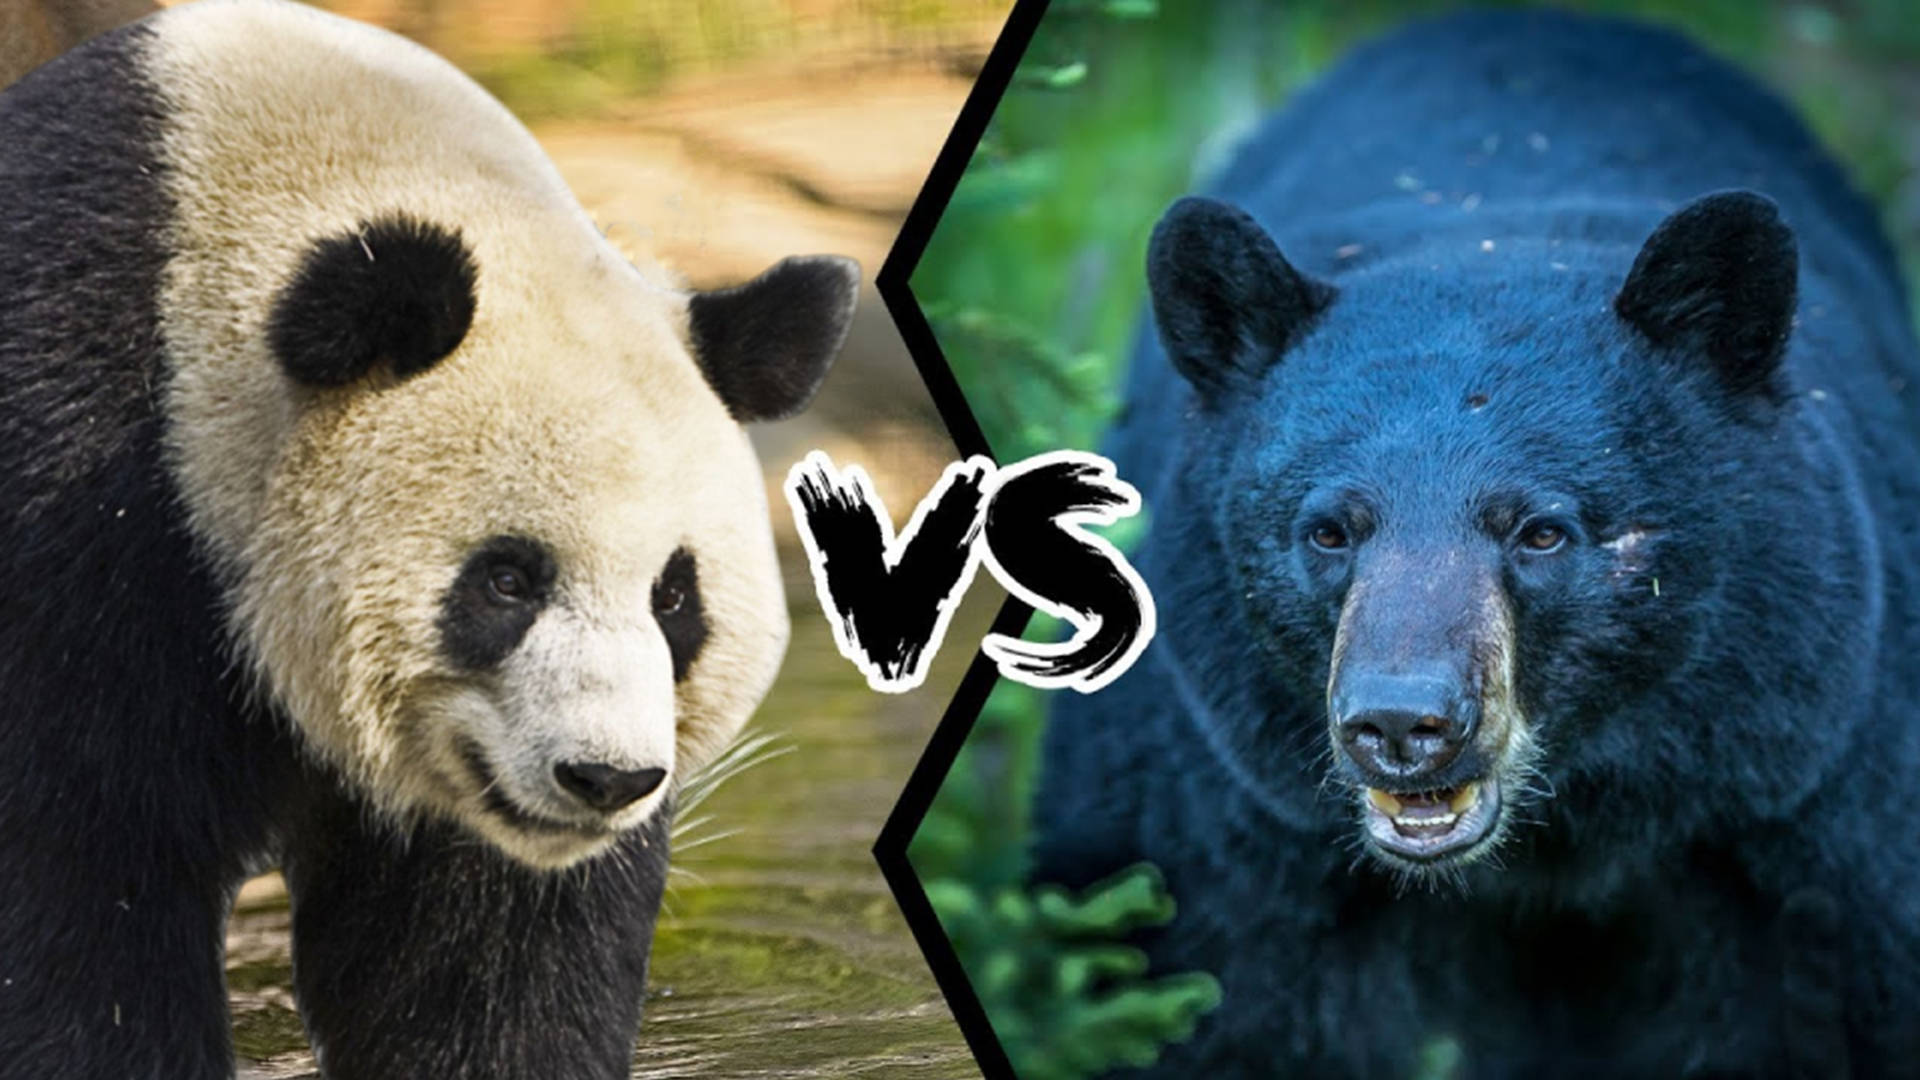 原创大熊猫vs黑熊当老虎高手遇到美洲豹克星谁会笑到最后呢